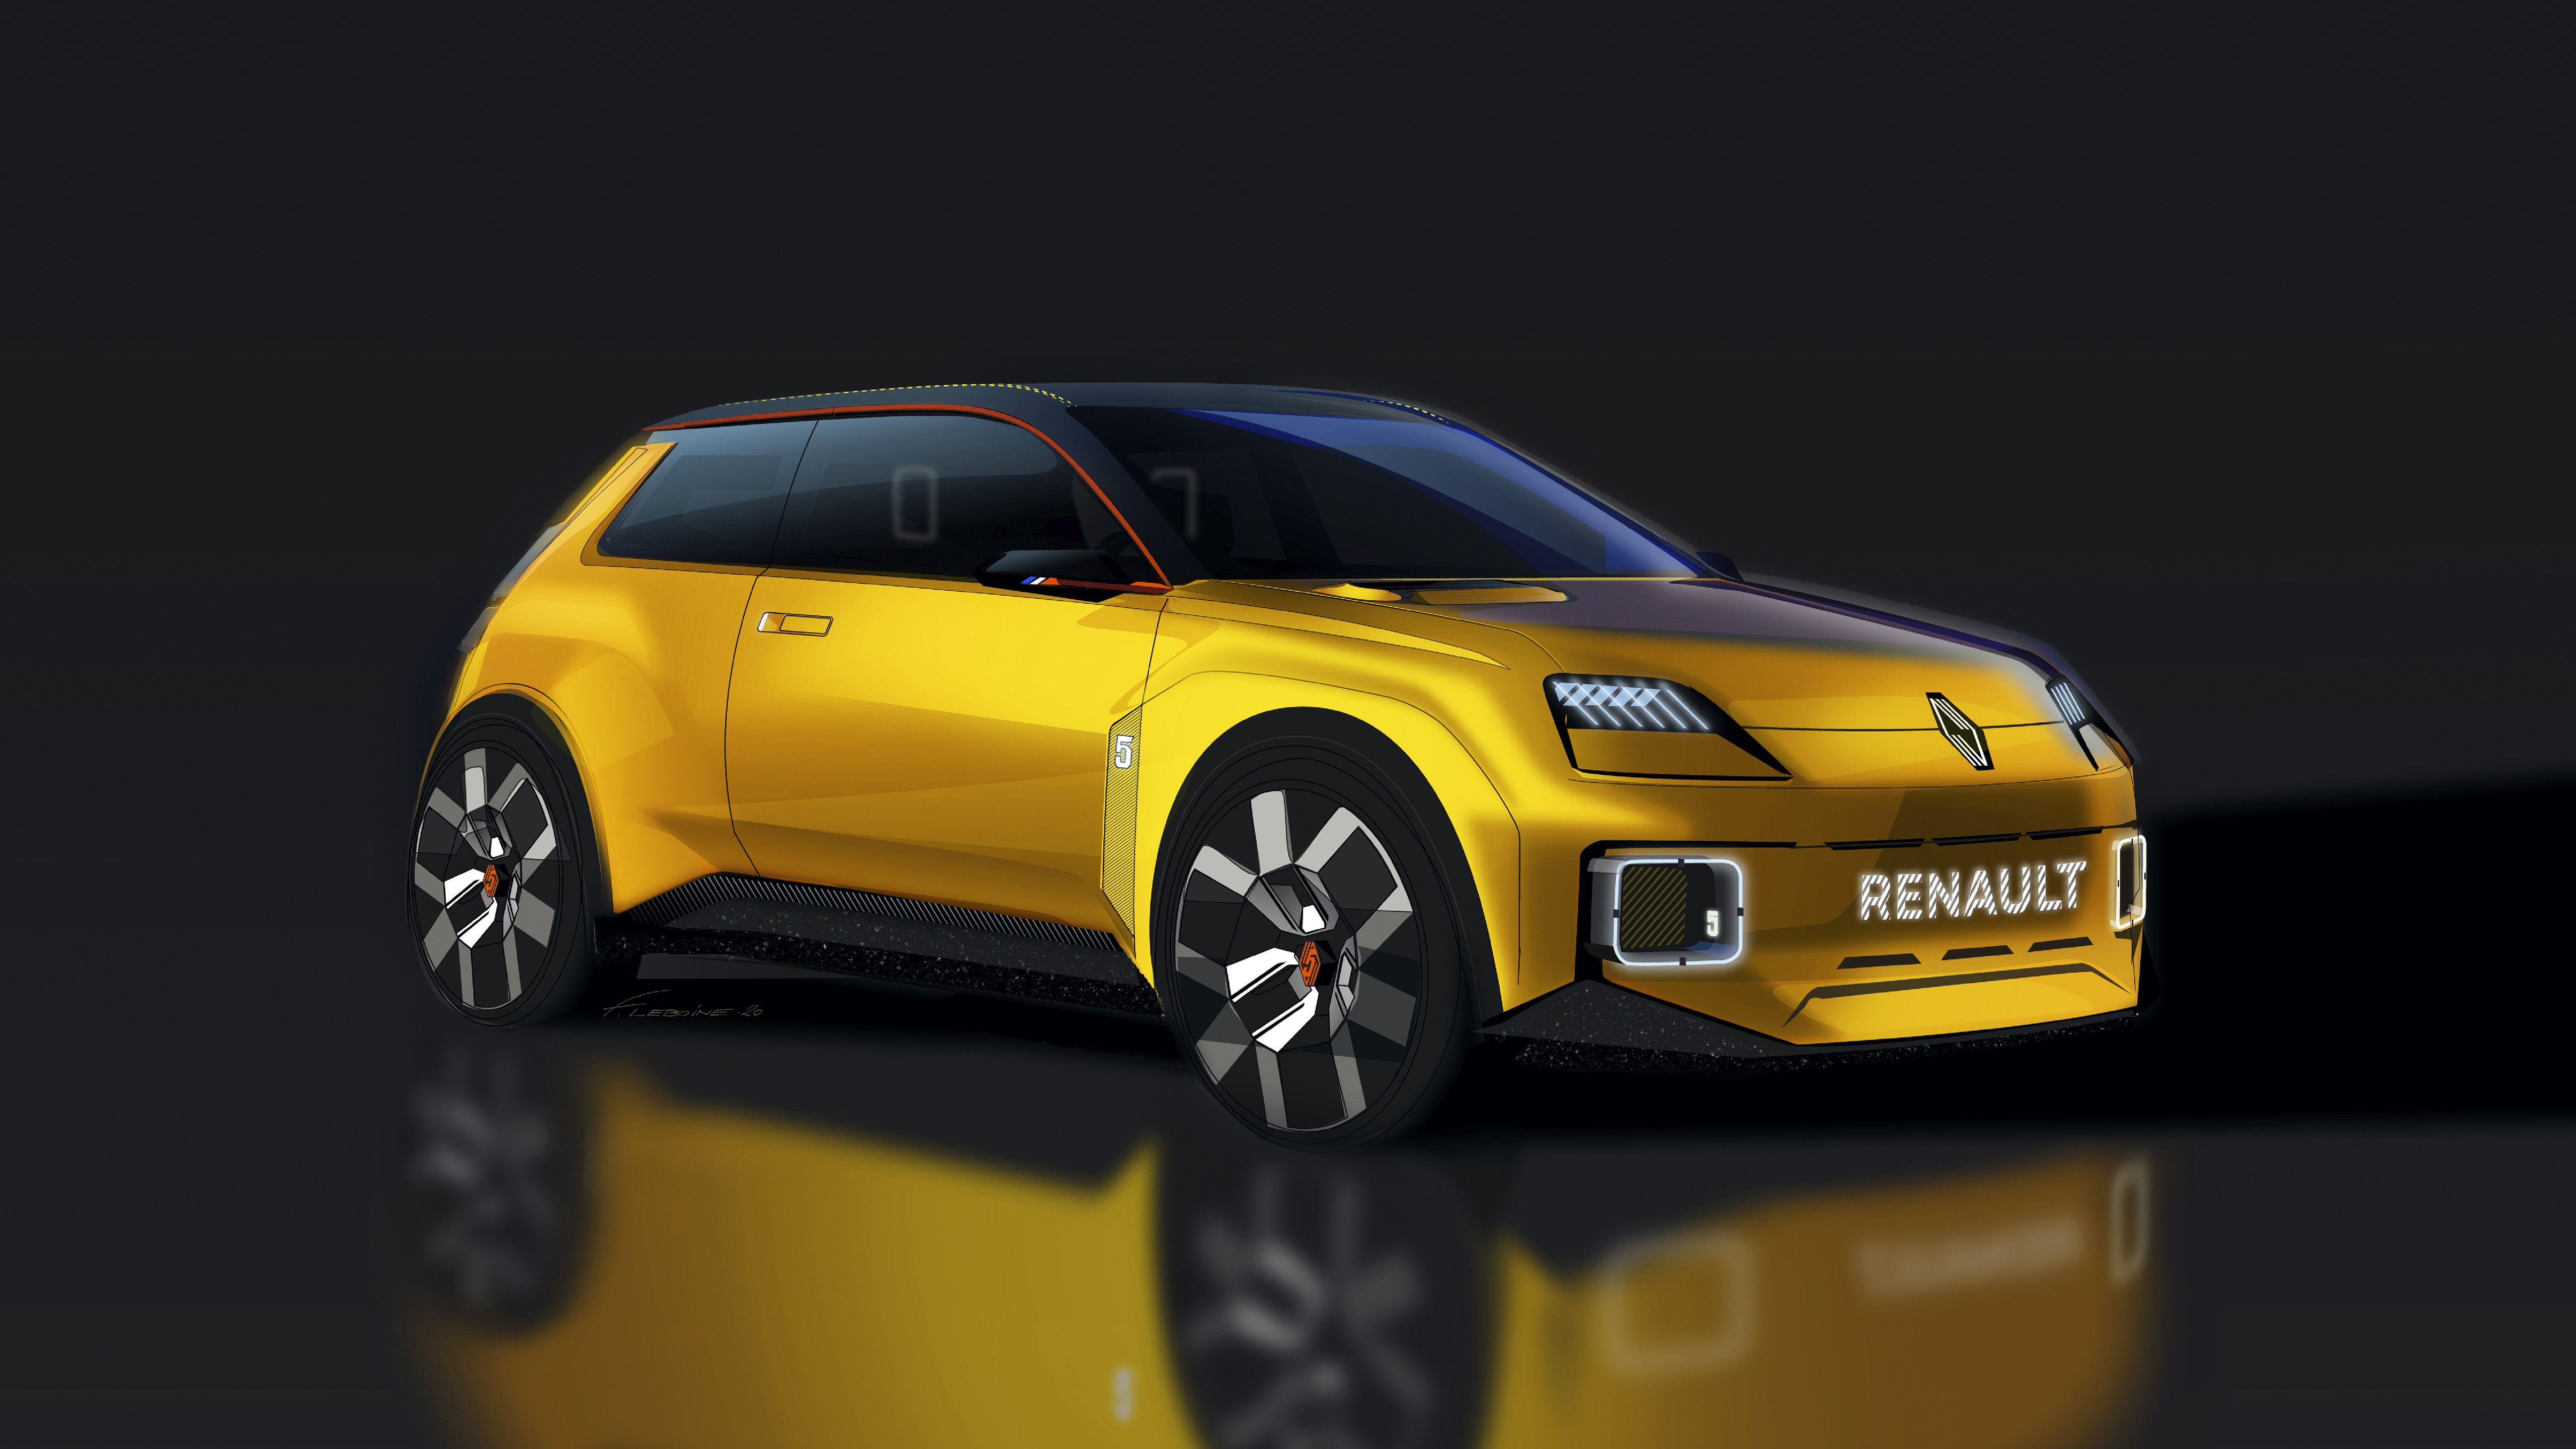 Renault 5 Prototype 2021 5K Wallpaper. HD Car Wallpaper